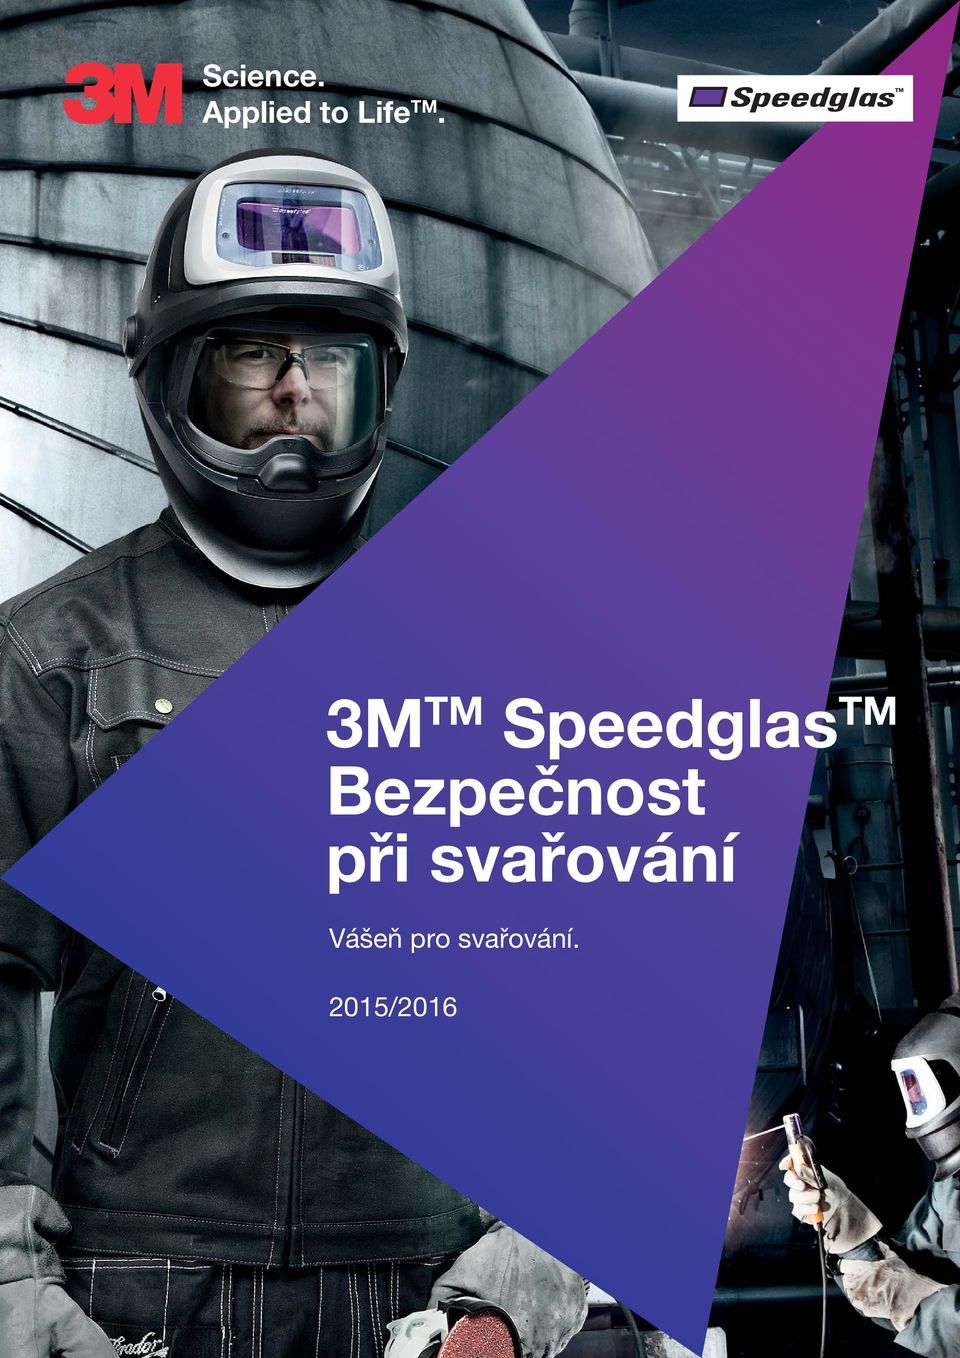 3M TM Speedglas TM